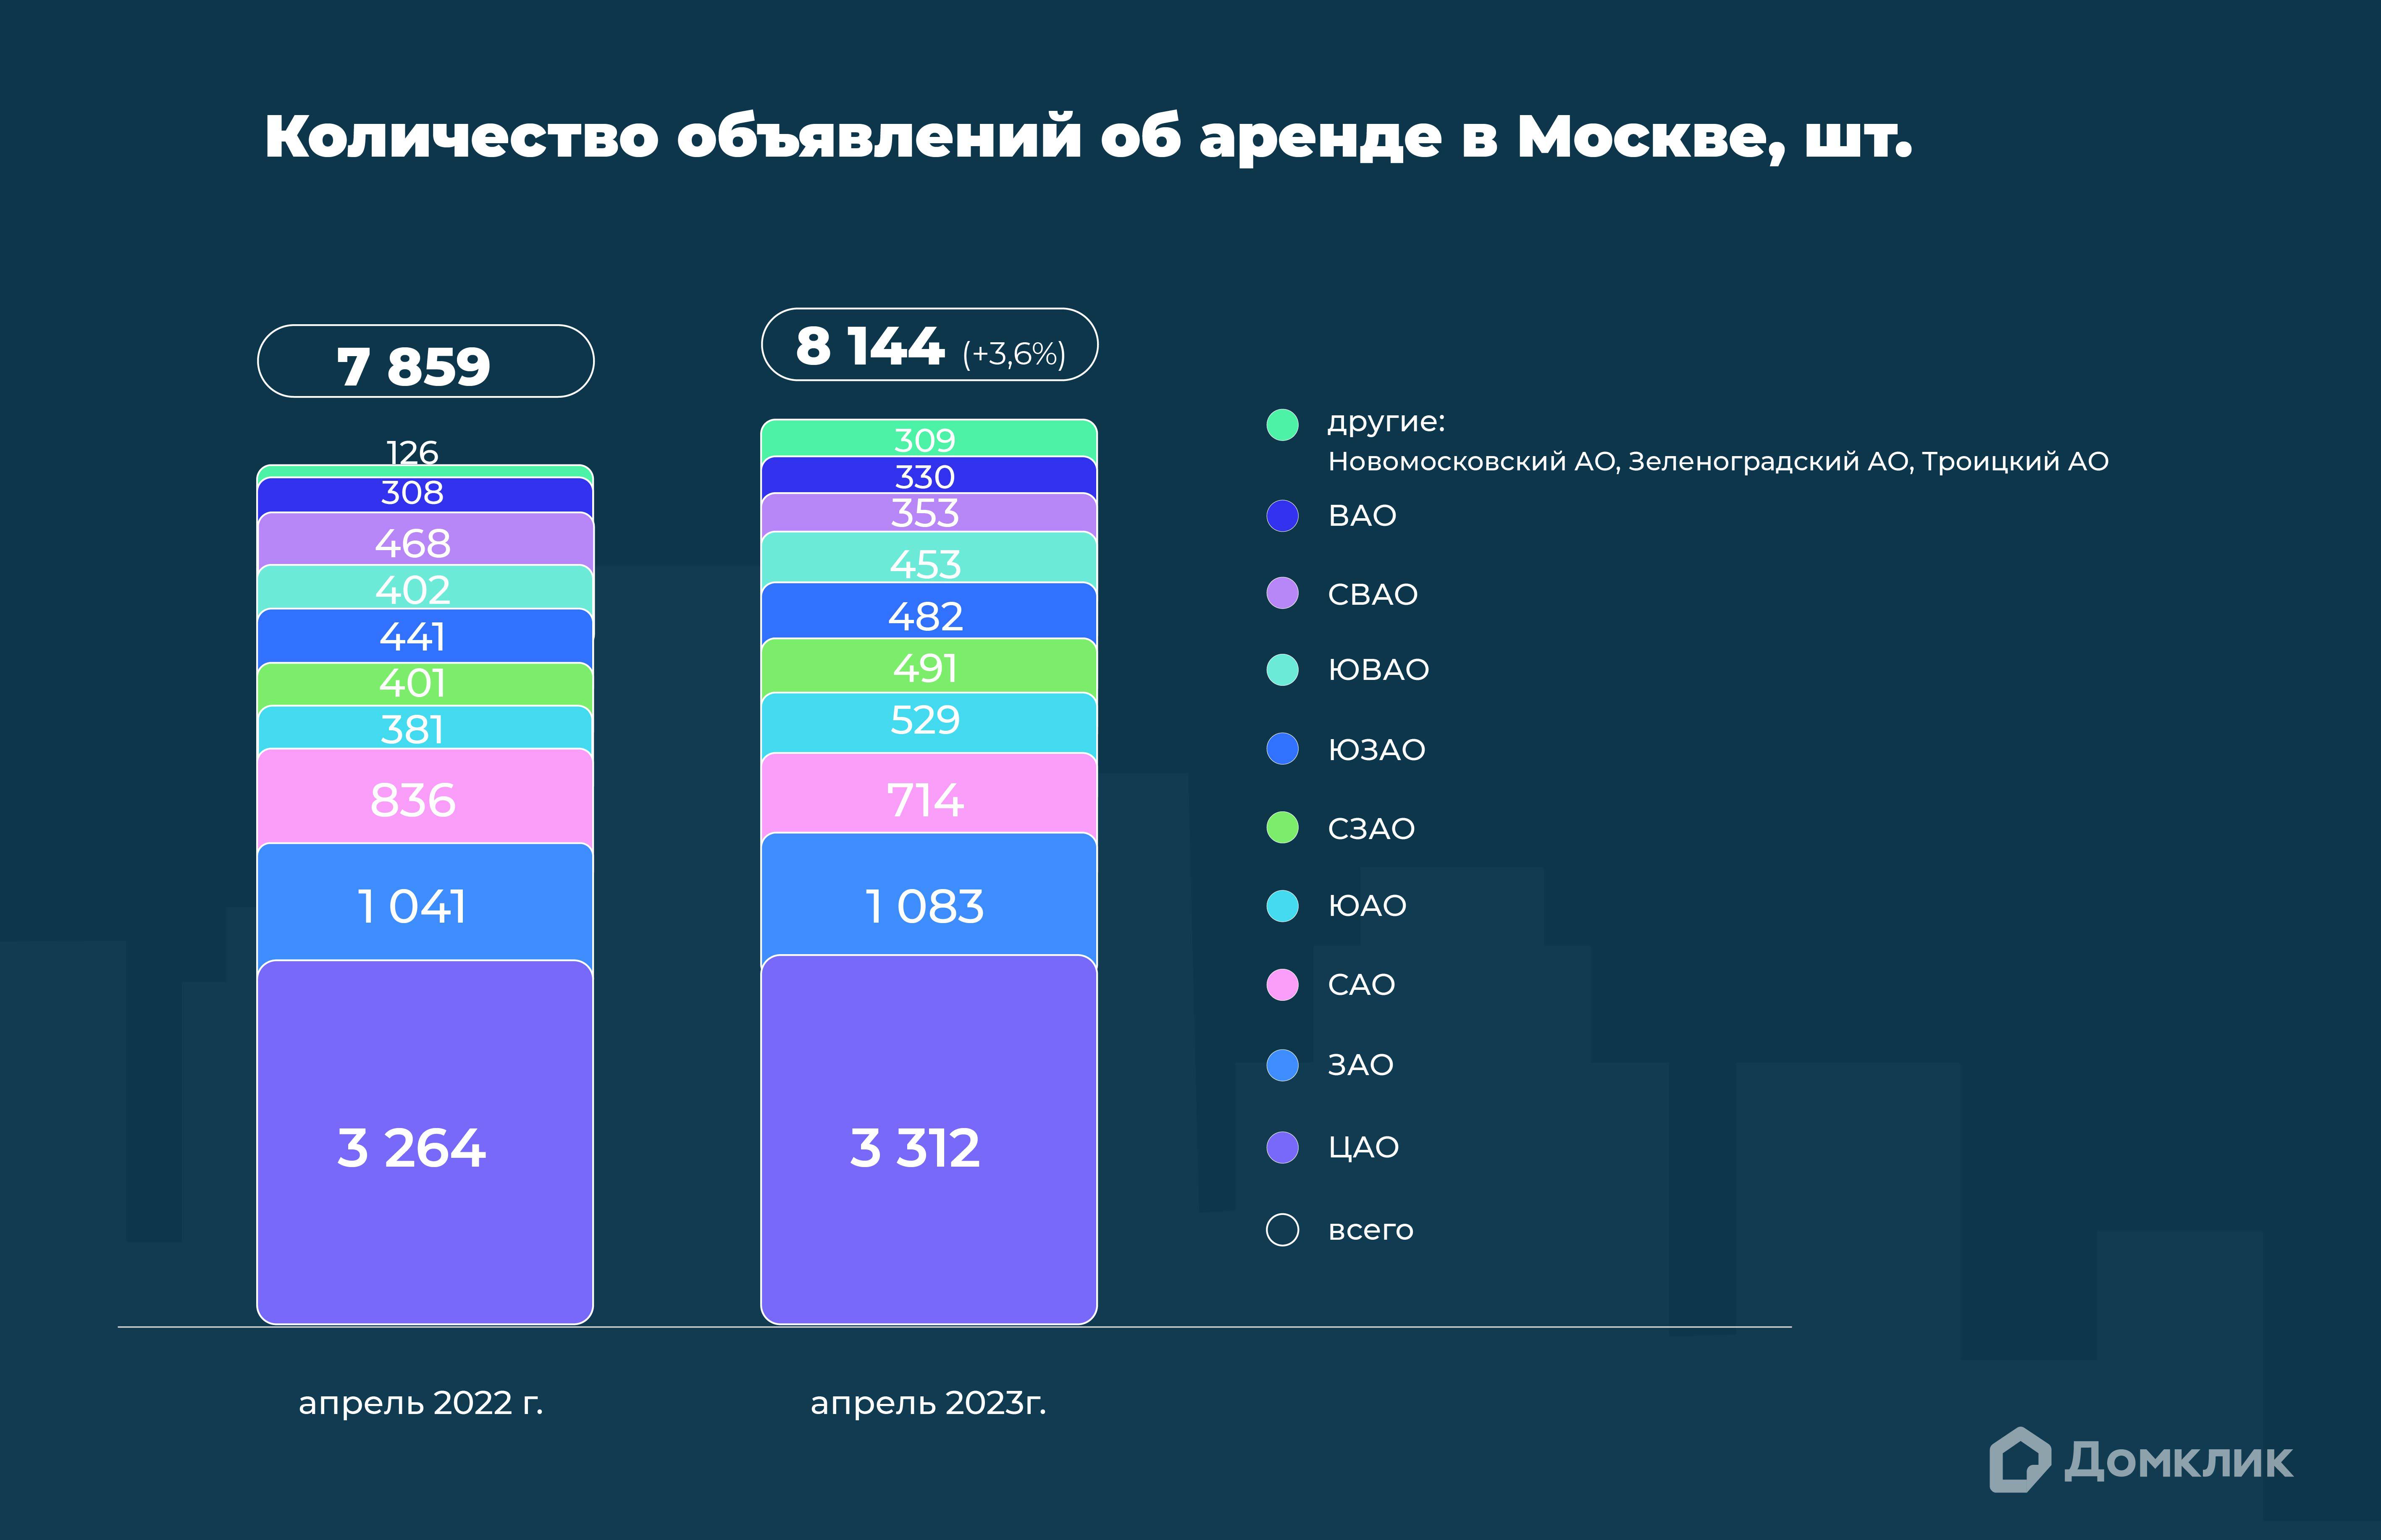 График показывает количество объявлений об аренде недвижимости в округах Москвы в апреле 2022 года и апреле 2023 года (в шт.). В скобках указано отношение данных апреля 2023 года к данным апреля 2022 года (%). Дополнительно приведены данные по всей Москве